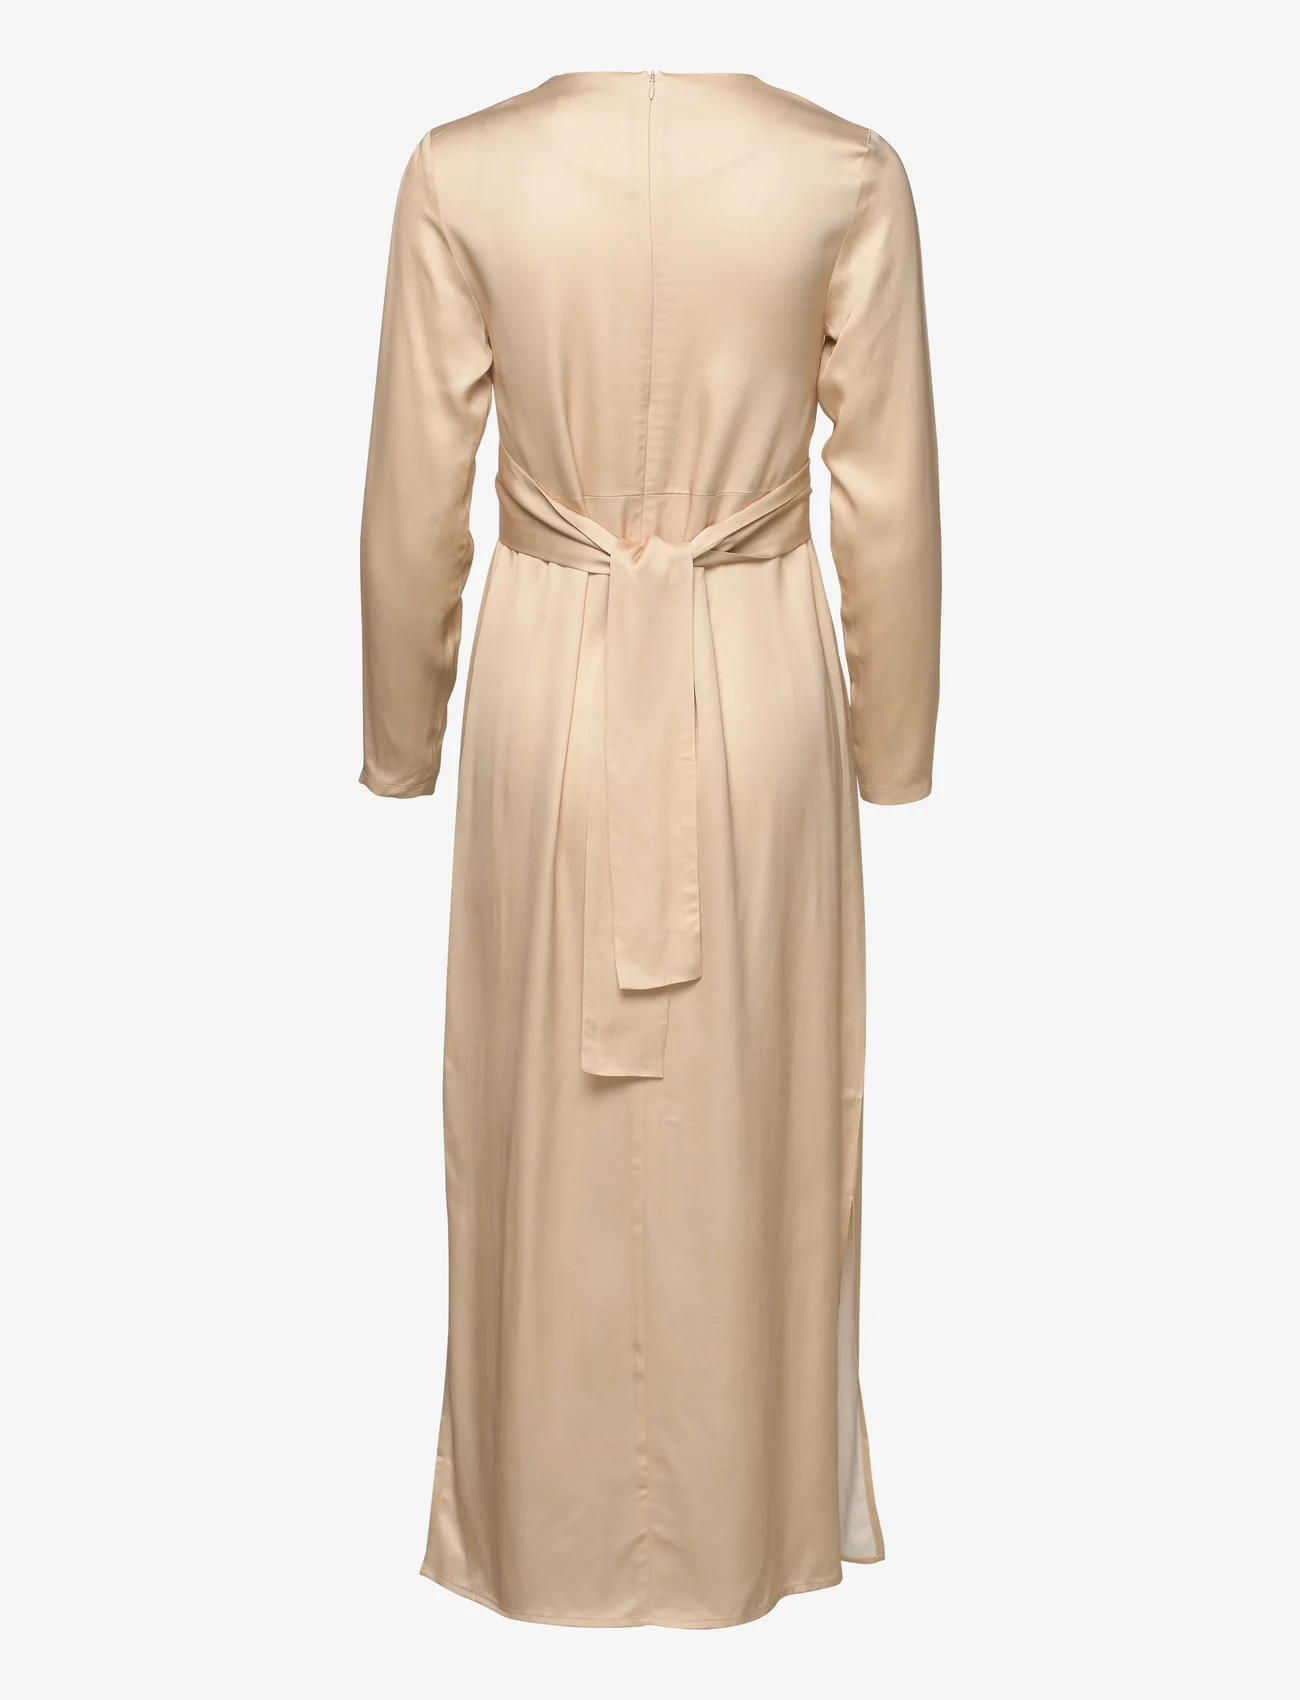 Jakke Harper Dress (Butter), 818.55 Stort af designer mærker | Booztlet.com